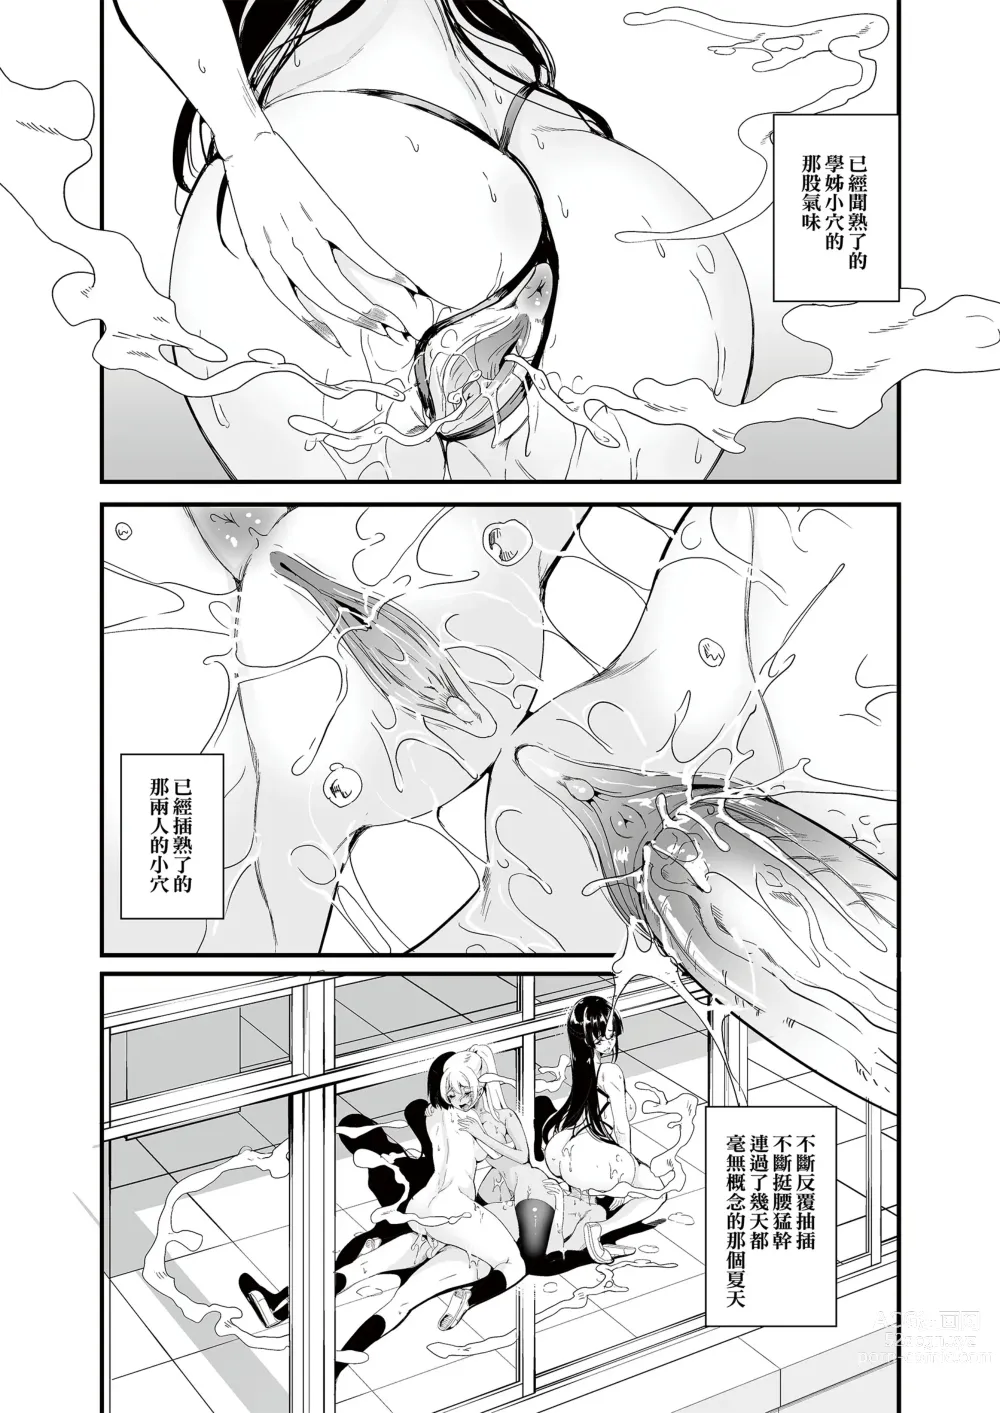 Page 5 of doujinshi ha-remu ha kanozyo no nio i sara ni mure ru mono tati